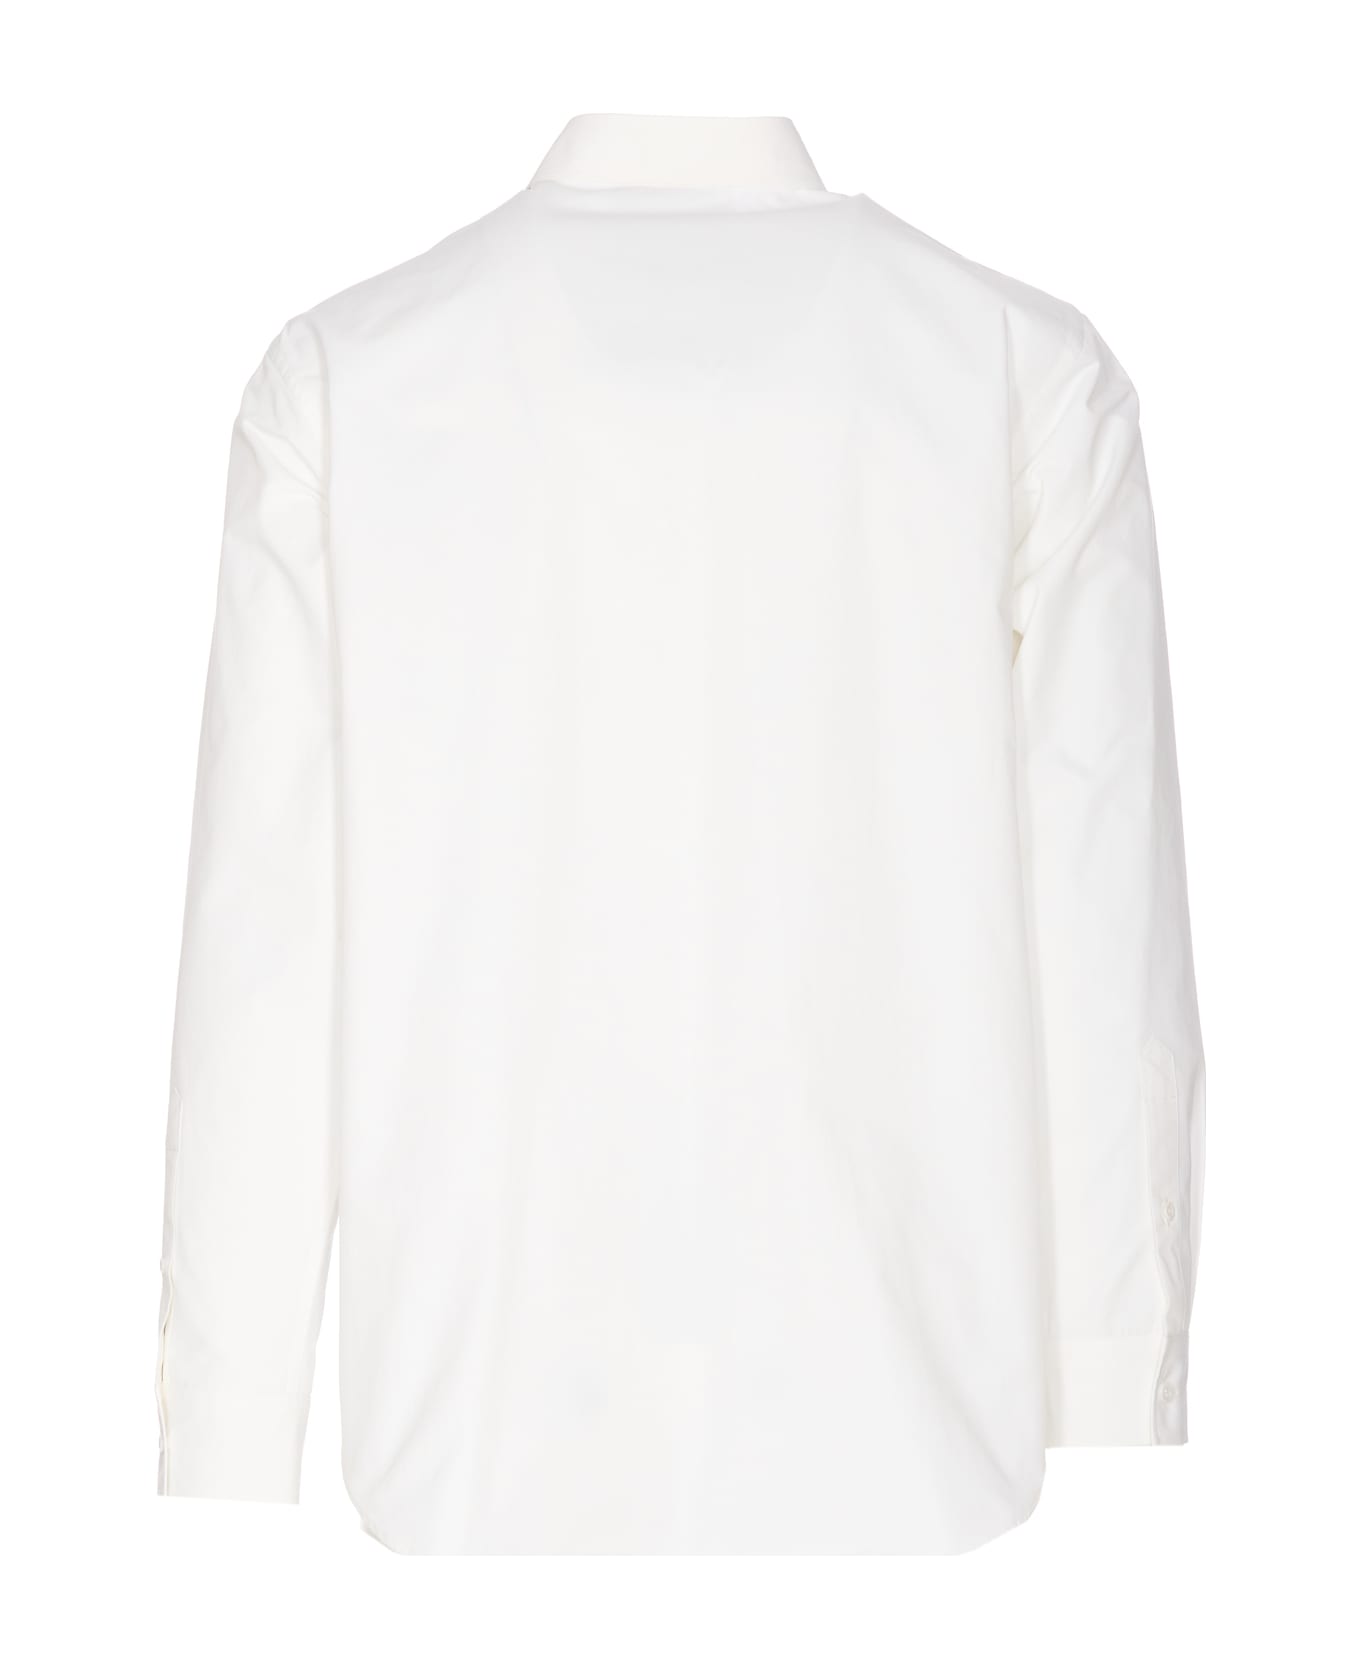 Moschino Heart Shirt - White